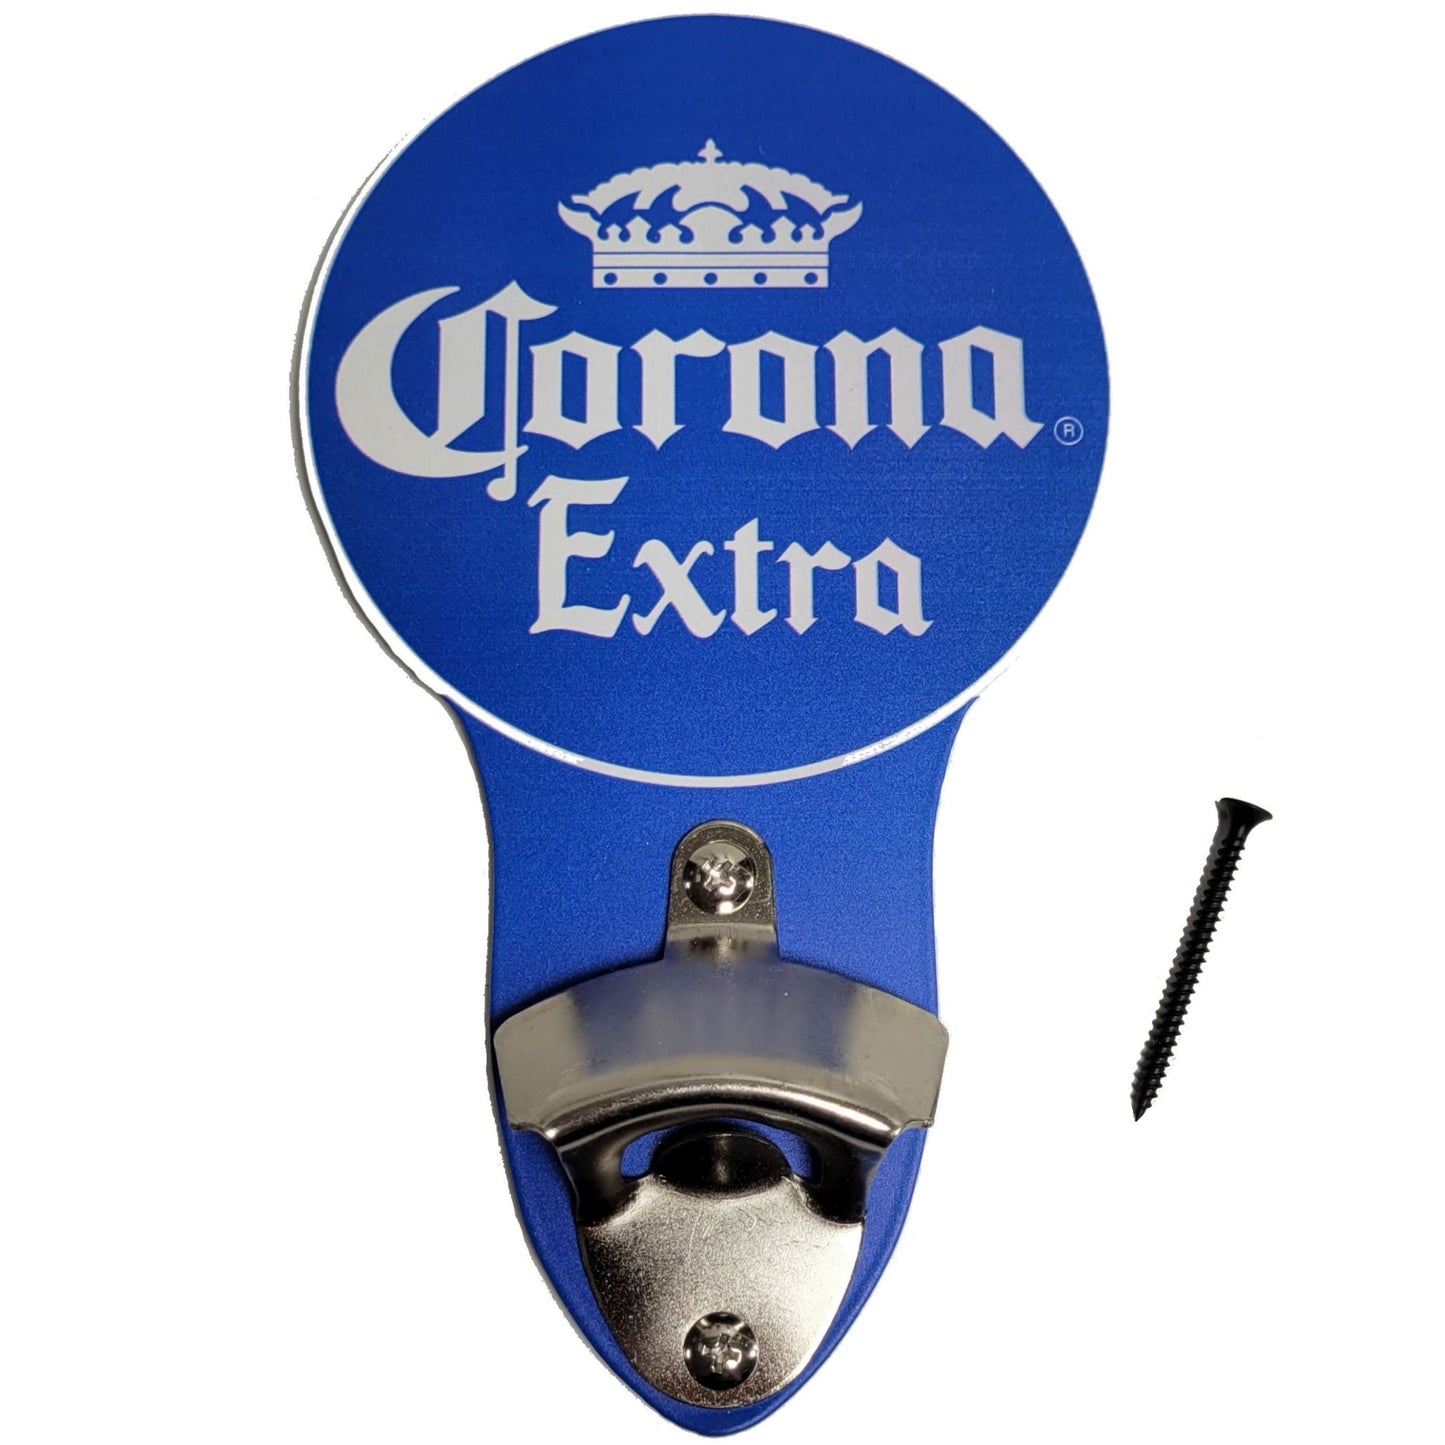 Corona Extra Metal Sign Bottle Opener